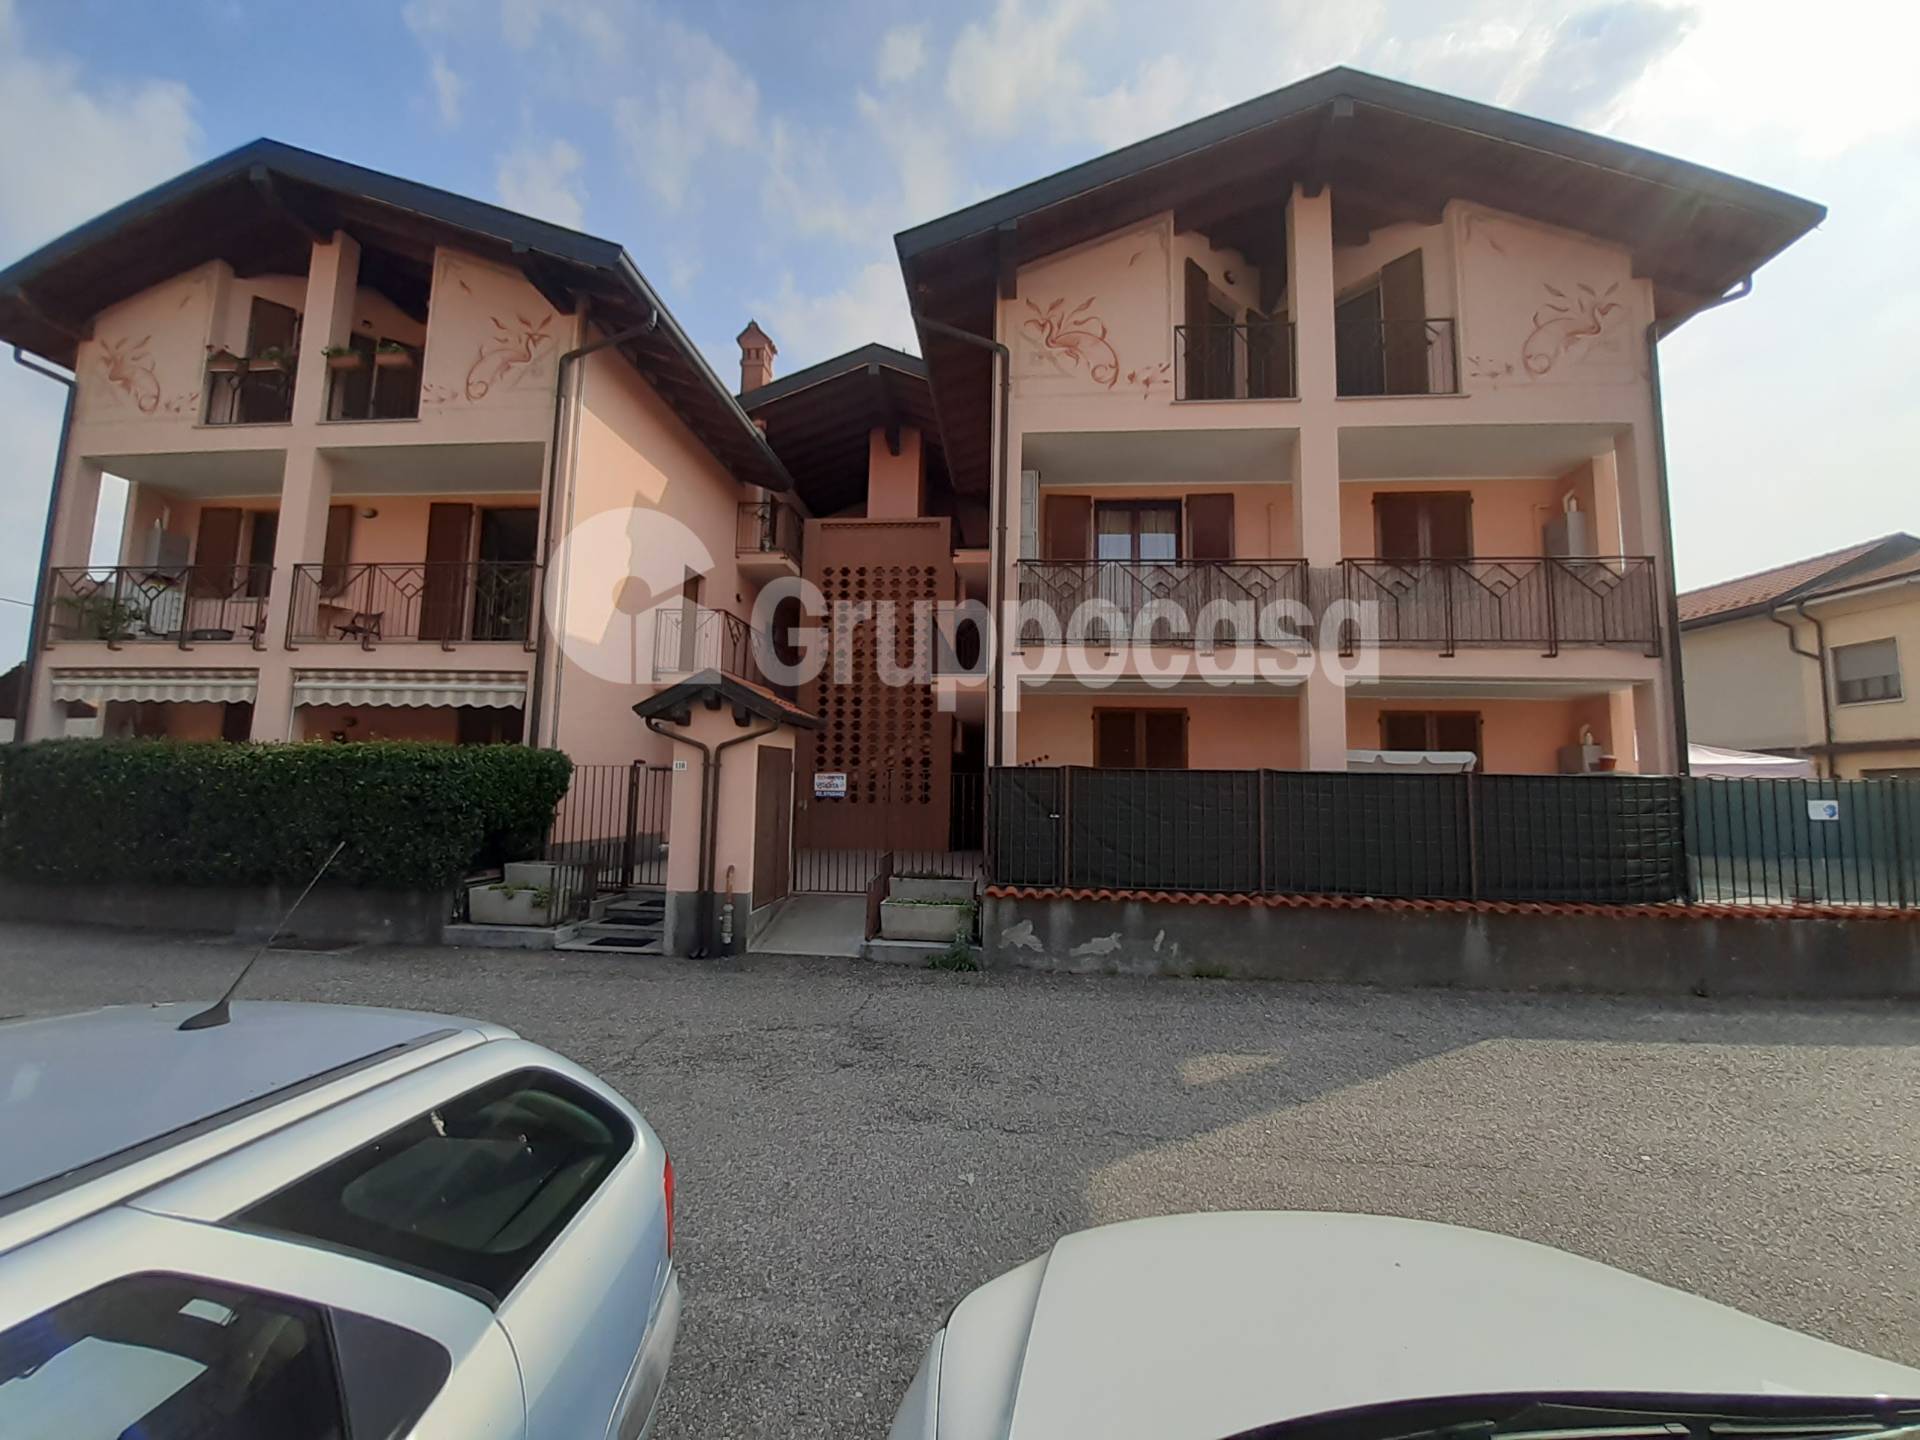 Appartamento in vendita a Marcallo con Casone, 2 locali, prezzo € 87.000 | PortaleAgenzieImmobiliari.it